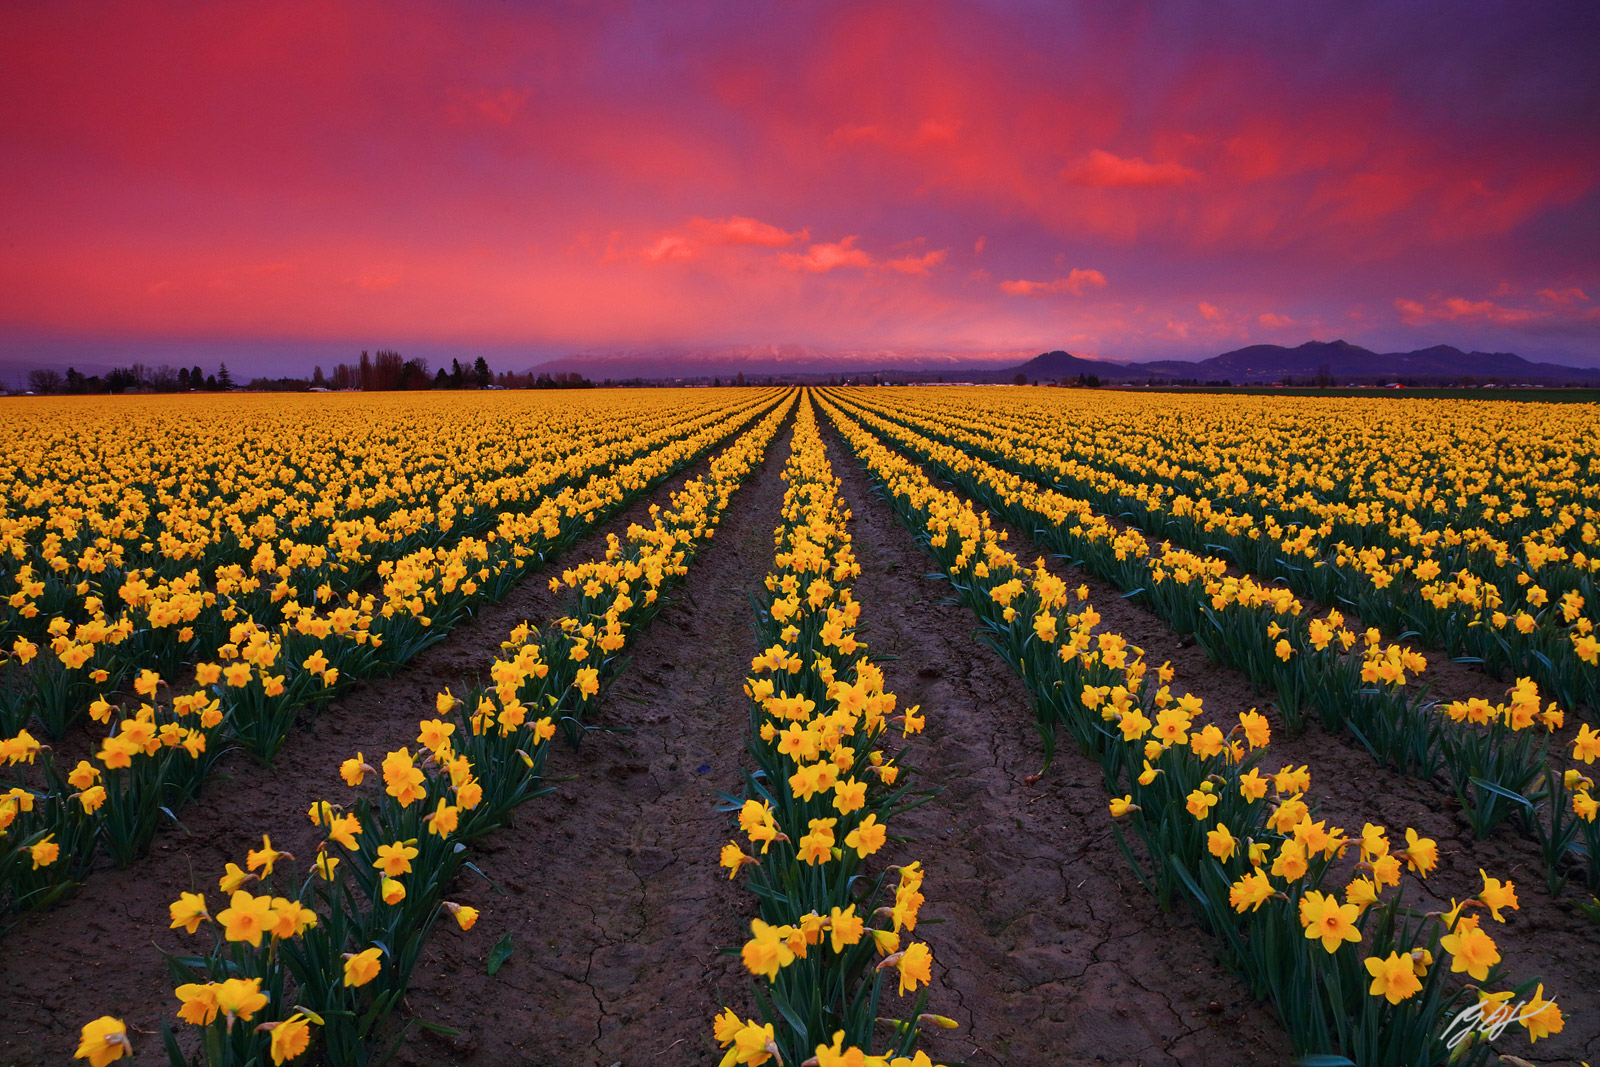 Sunset in the Daffodil Fields,  Roozengaarde Fields in Skagit Valley in Washington